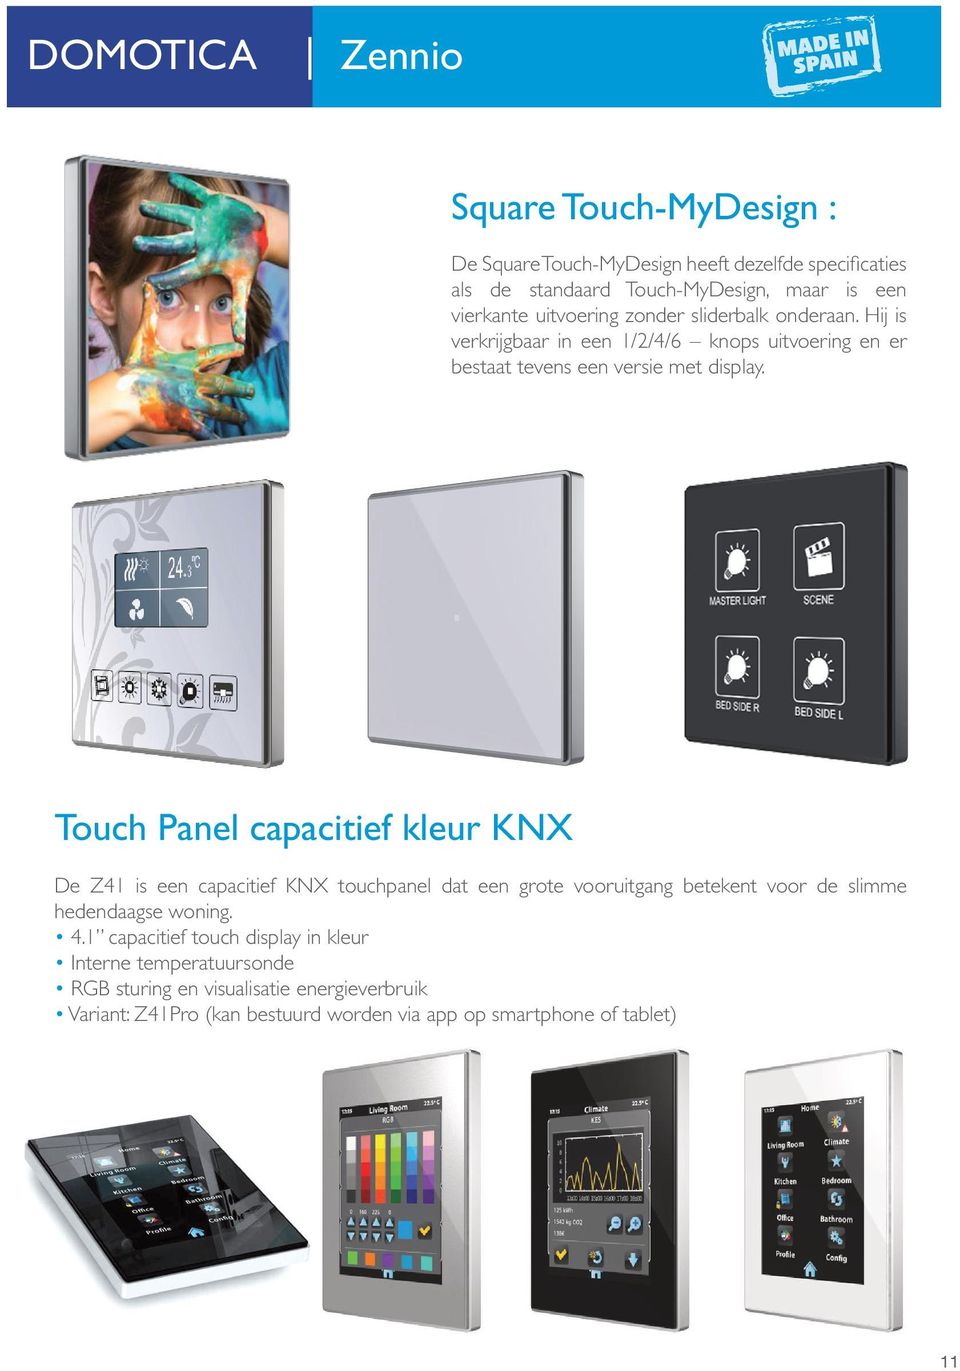 Touch Panel capacitief kleur KNX De Z41 is een capacitief KNX touchpanel dat een grote vooruitgang betekent voor de slimme hedendaagse woning. 4.